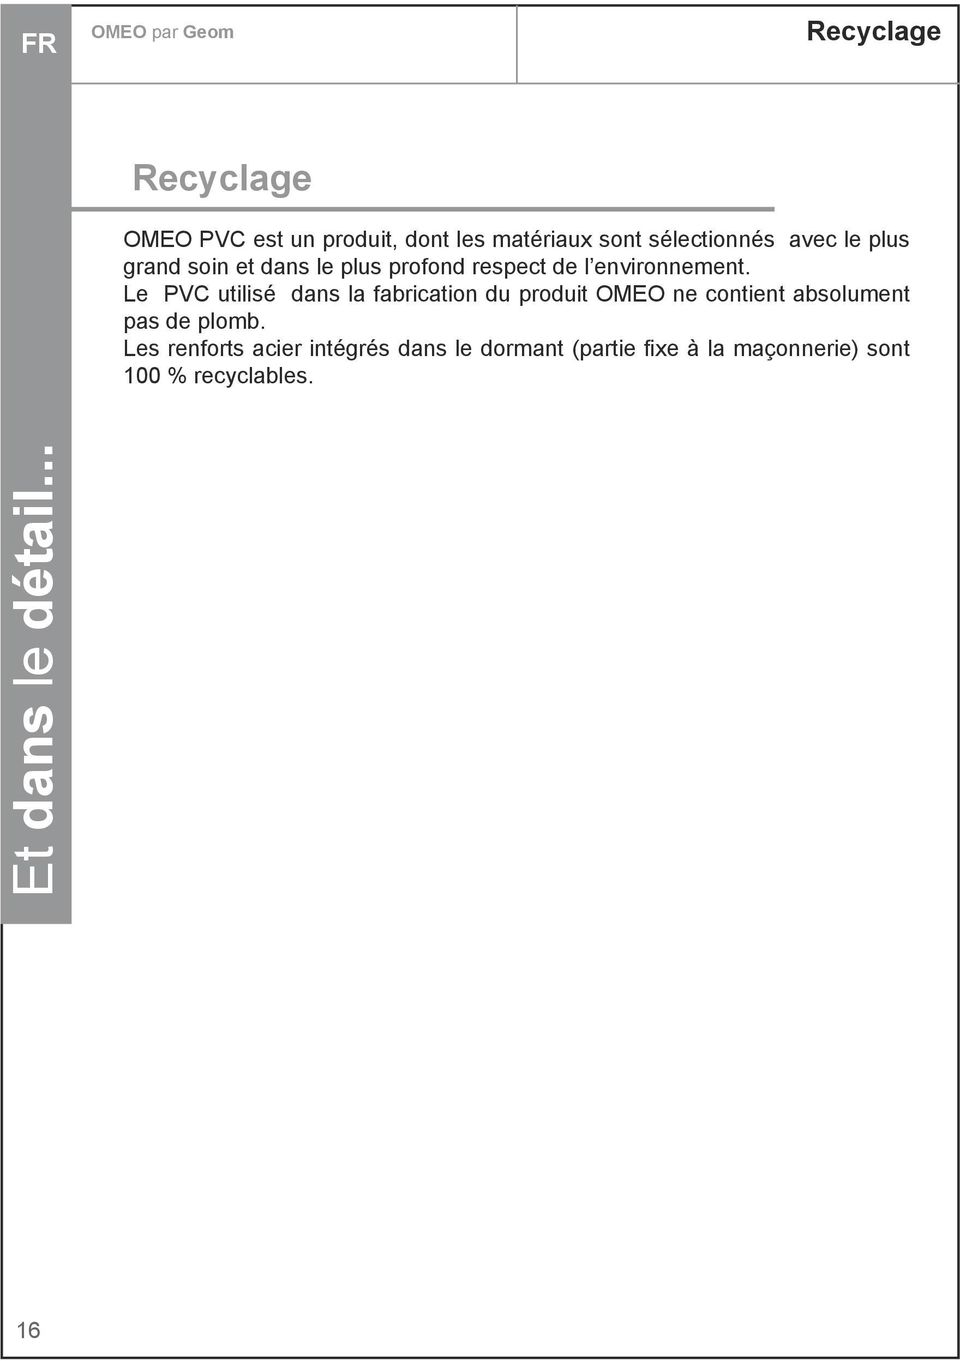 Le PVC utilisé dans la fabrication du produit OMEO ne contient absolument pas de plomb.